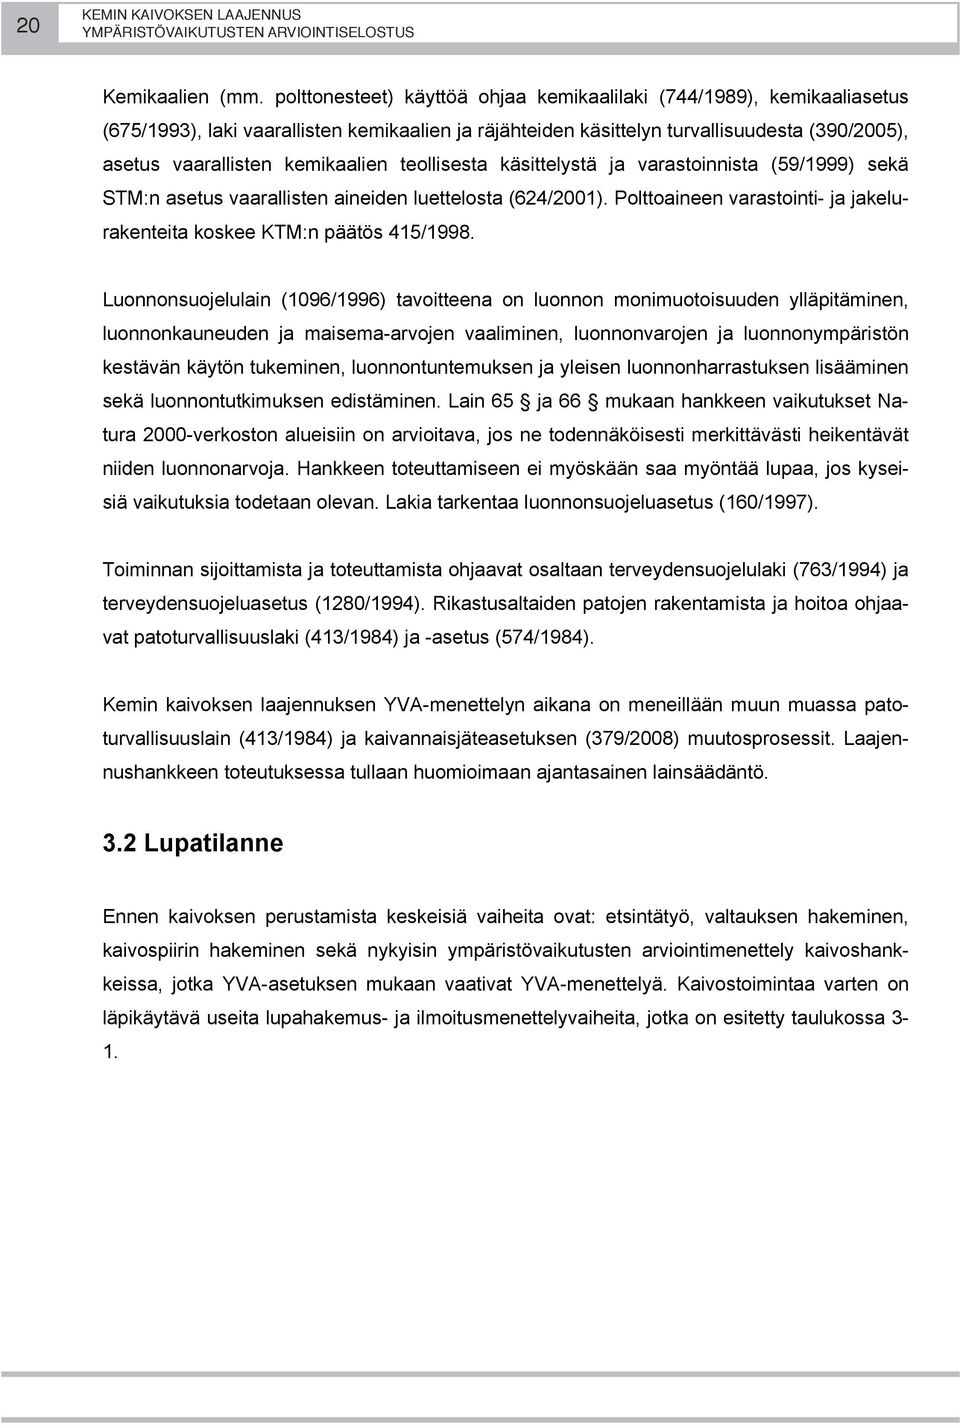 teollisesta käsittelystä ja varastoinnista (59/1999) sekä STM:n asetus vaarallisten aineiden luettelosta (624/2001). Polttoaineen varastointi- ja jakelurakenteita koskee KTM:n päätös 415/1998.